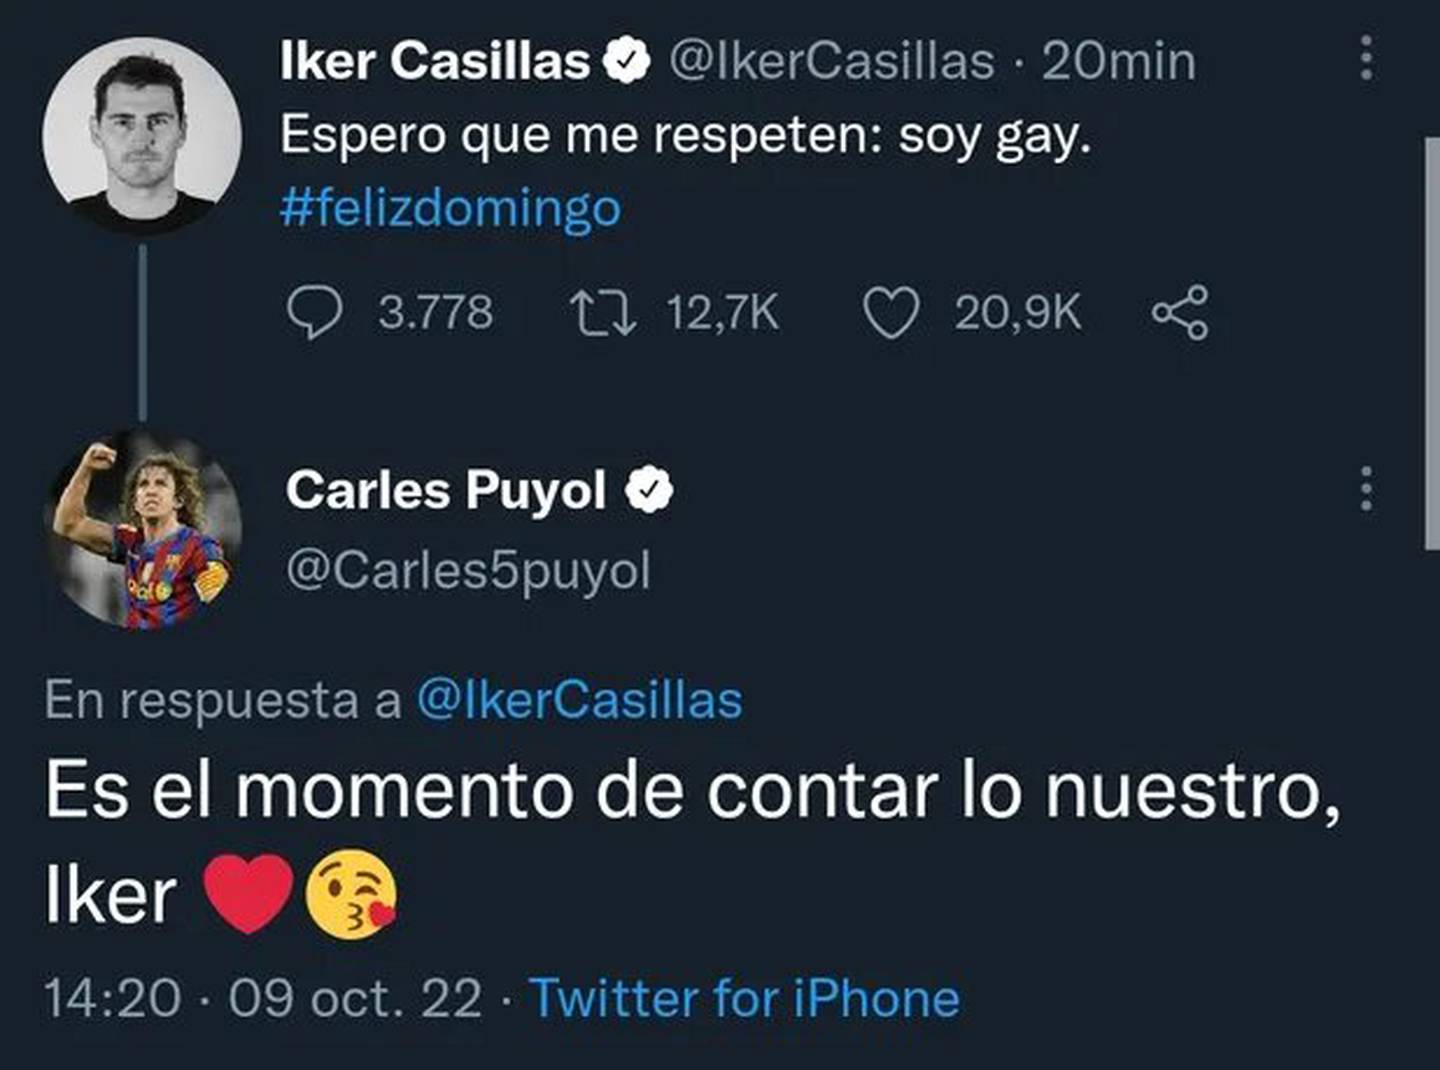 Puyol quizo bromear con el tweet de Casillas pero le salió mal la jugada